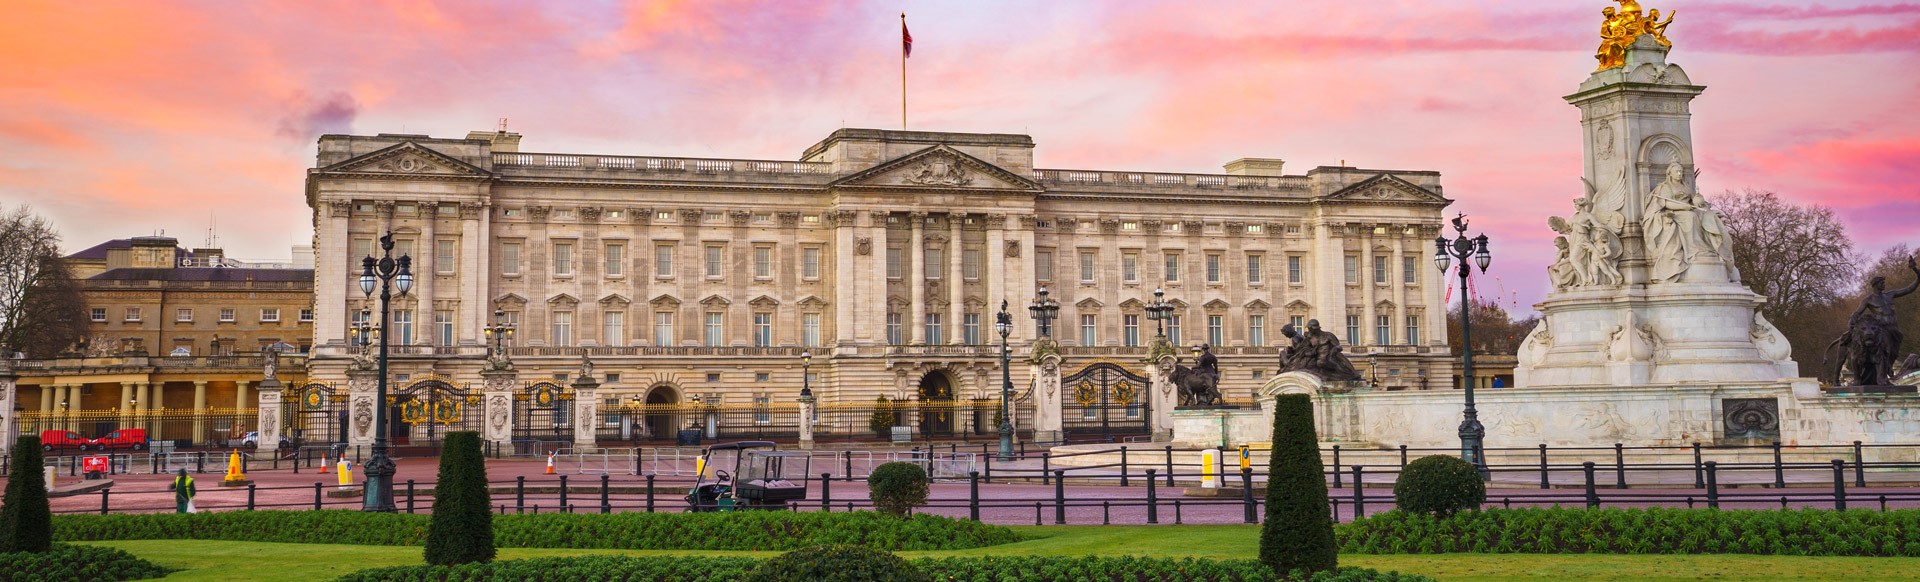 Le palais de Buckingham et les jardins du mémorial de la Reine Victoria sous un coucher de soleil flamboyant.